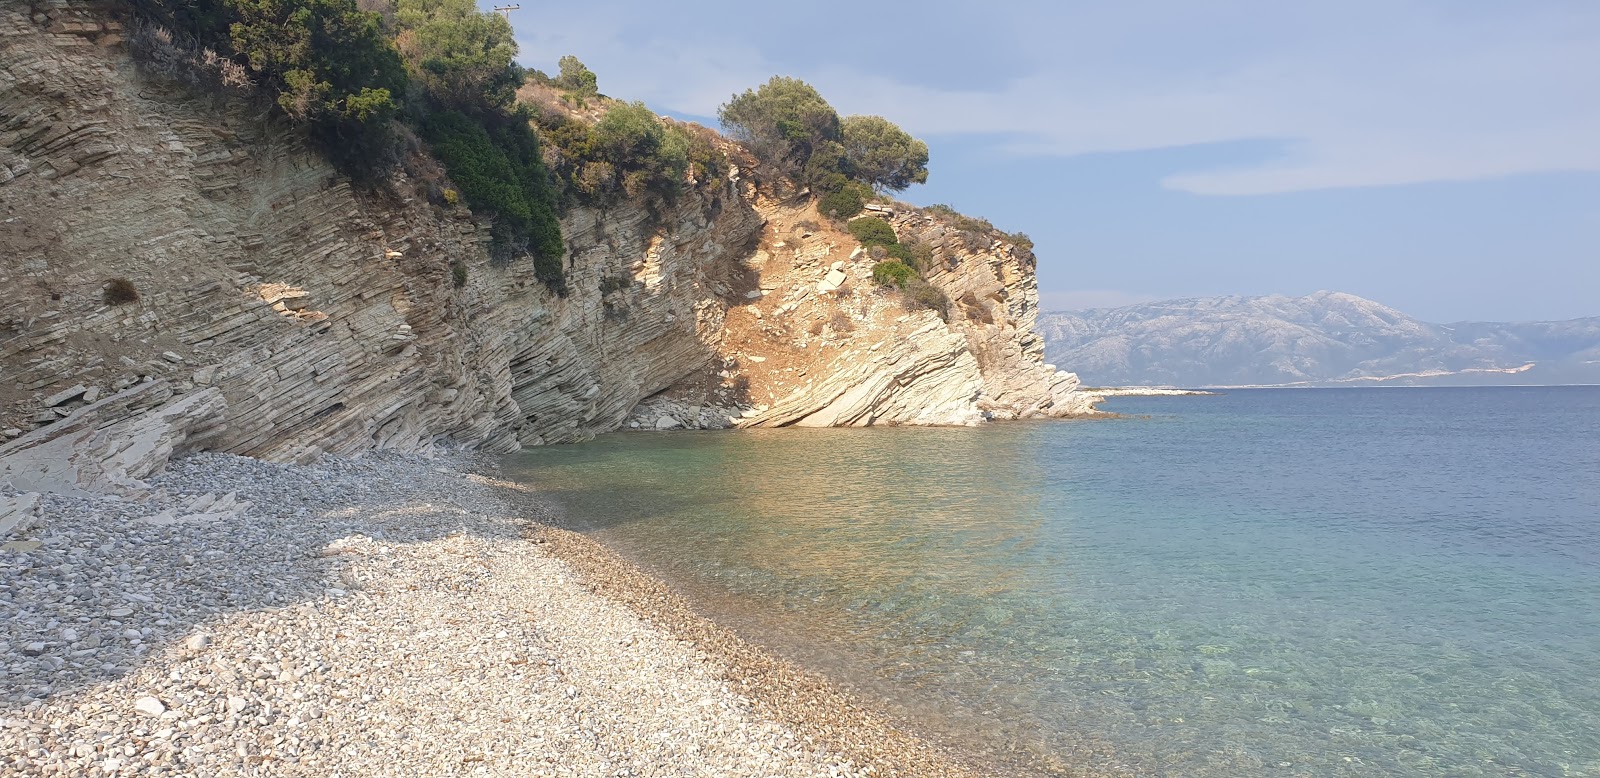 Foto von Kastos beach befindet sich in natürlicher umgebung